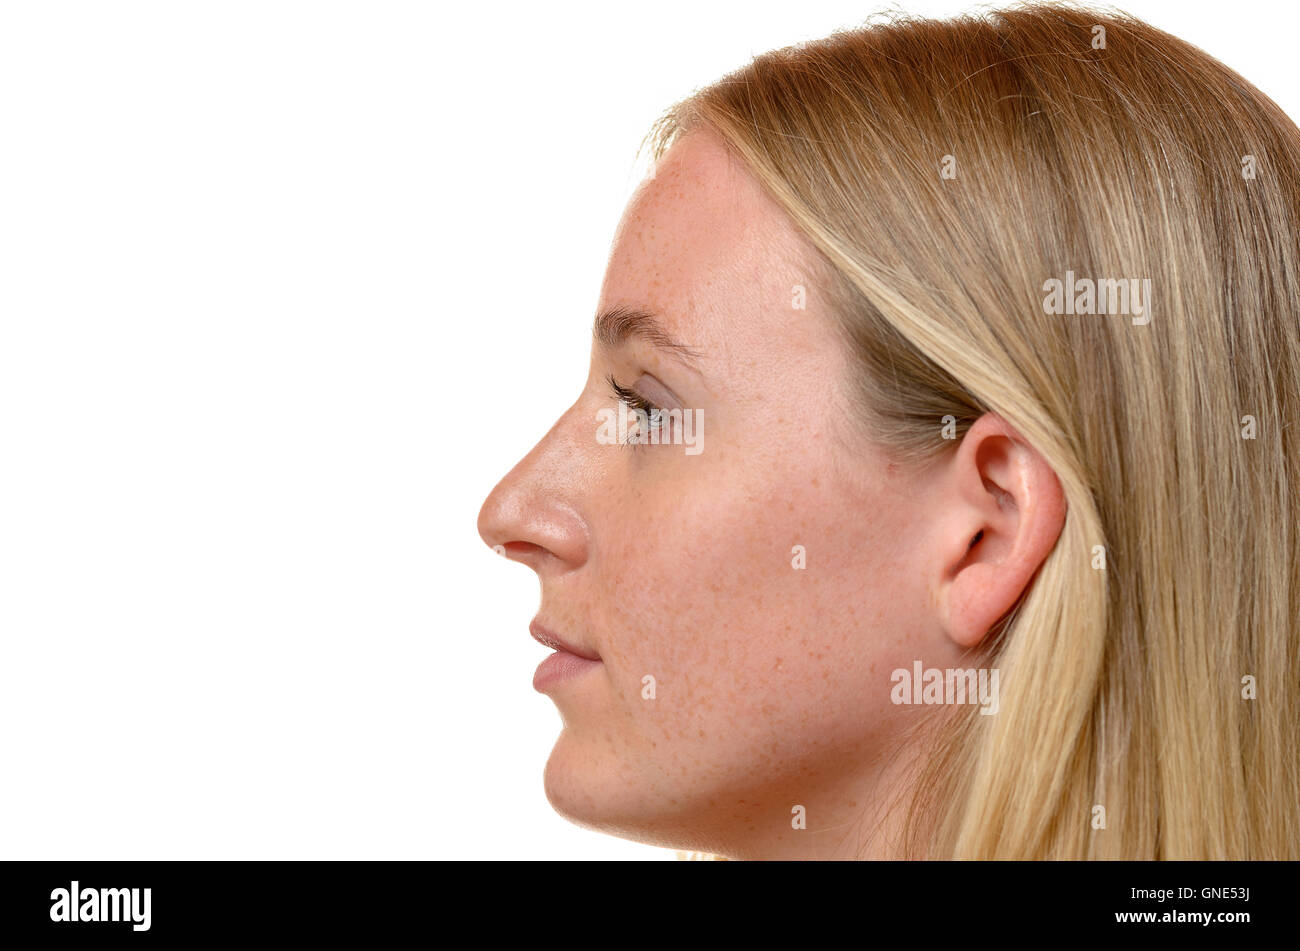 El perfil lateral vista de la cara de una atractiva mujer rubia con su largo cabello detrás de su oreja aislado en blanco Foto de stock